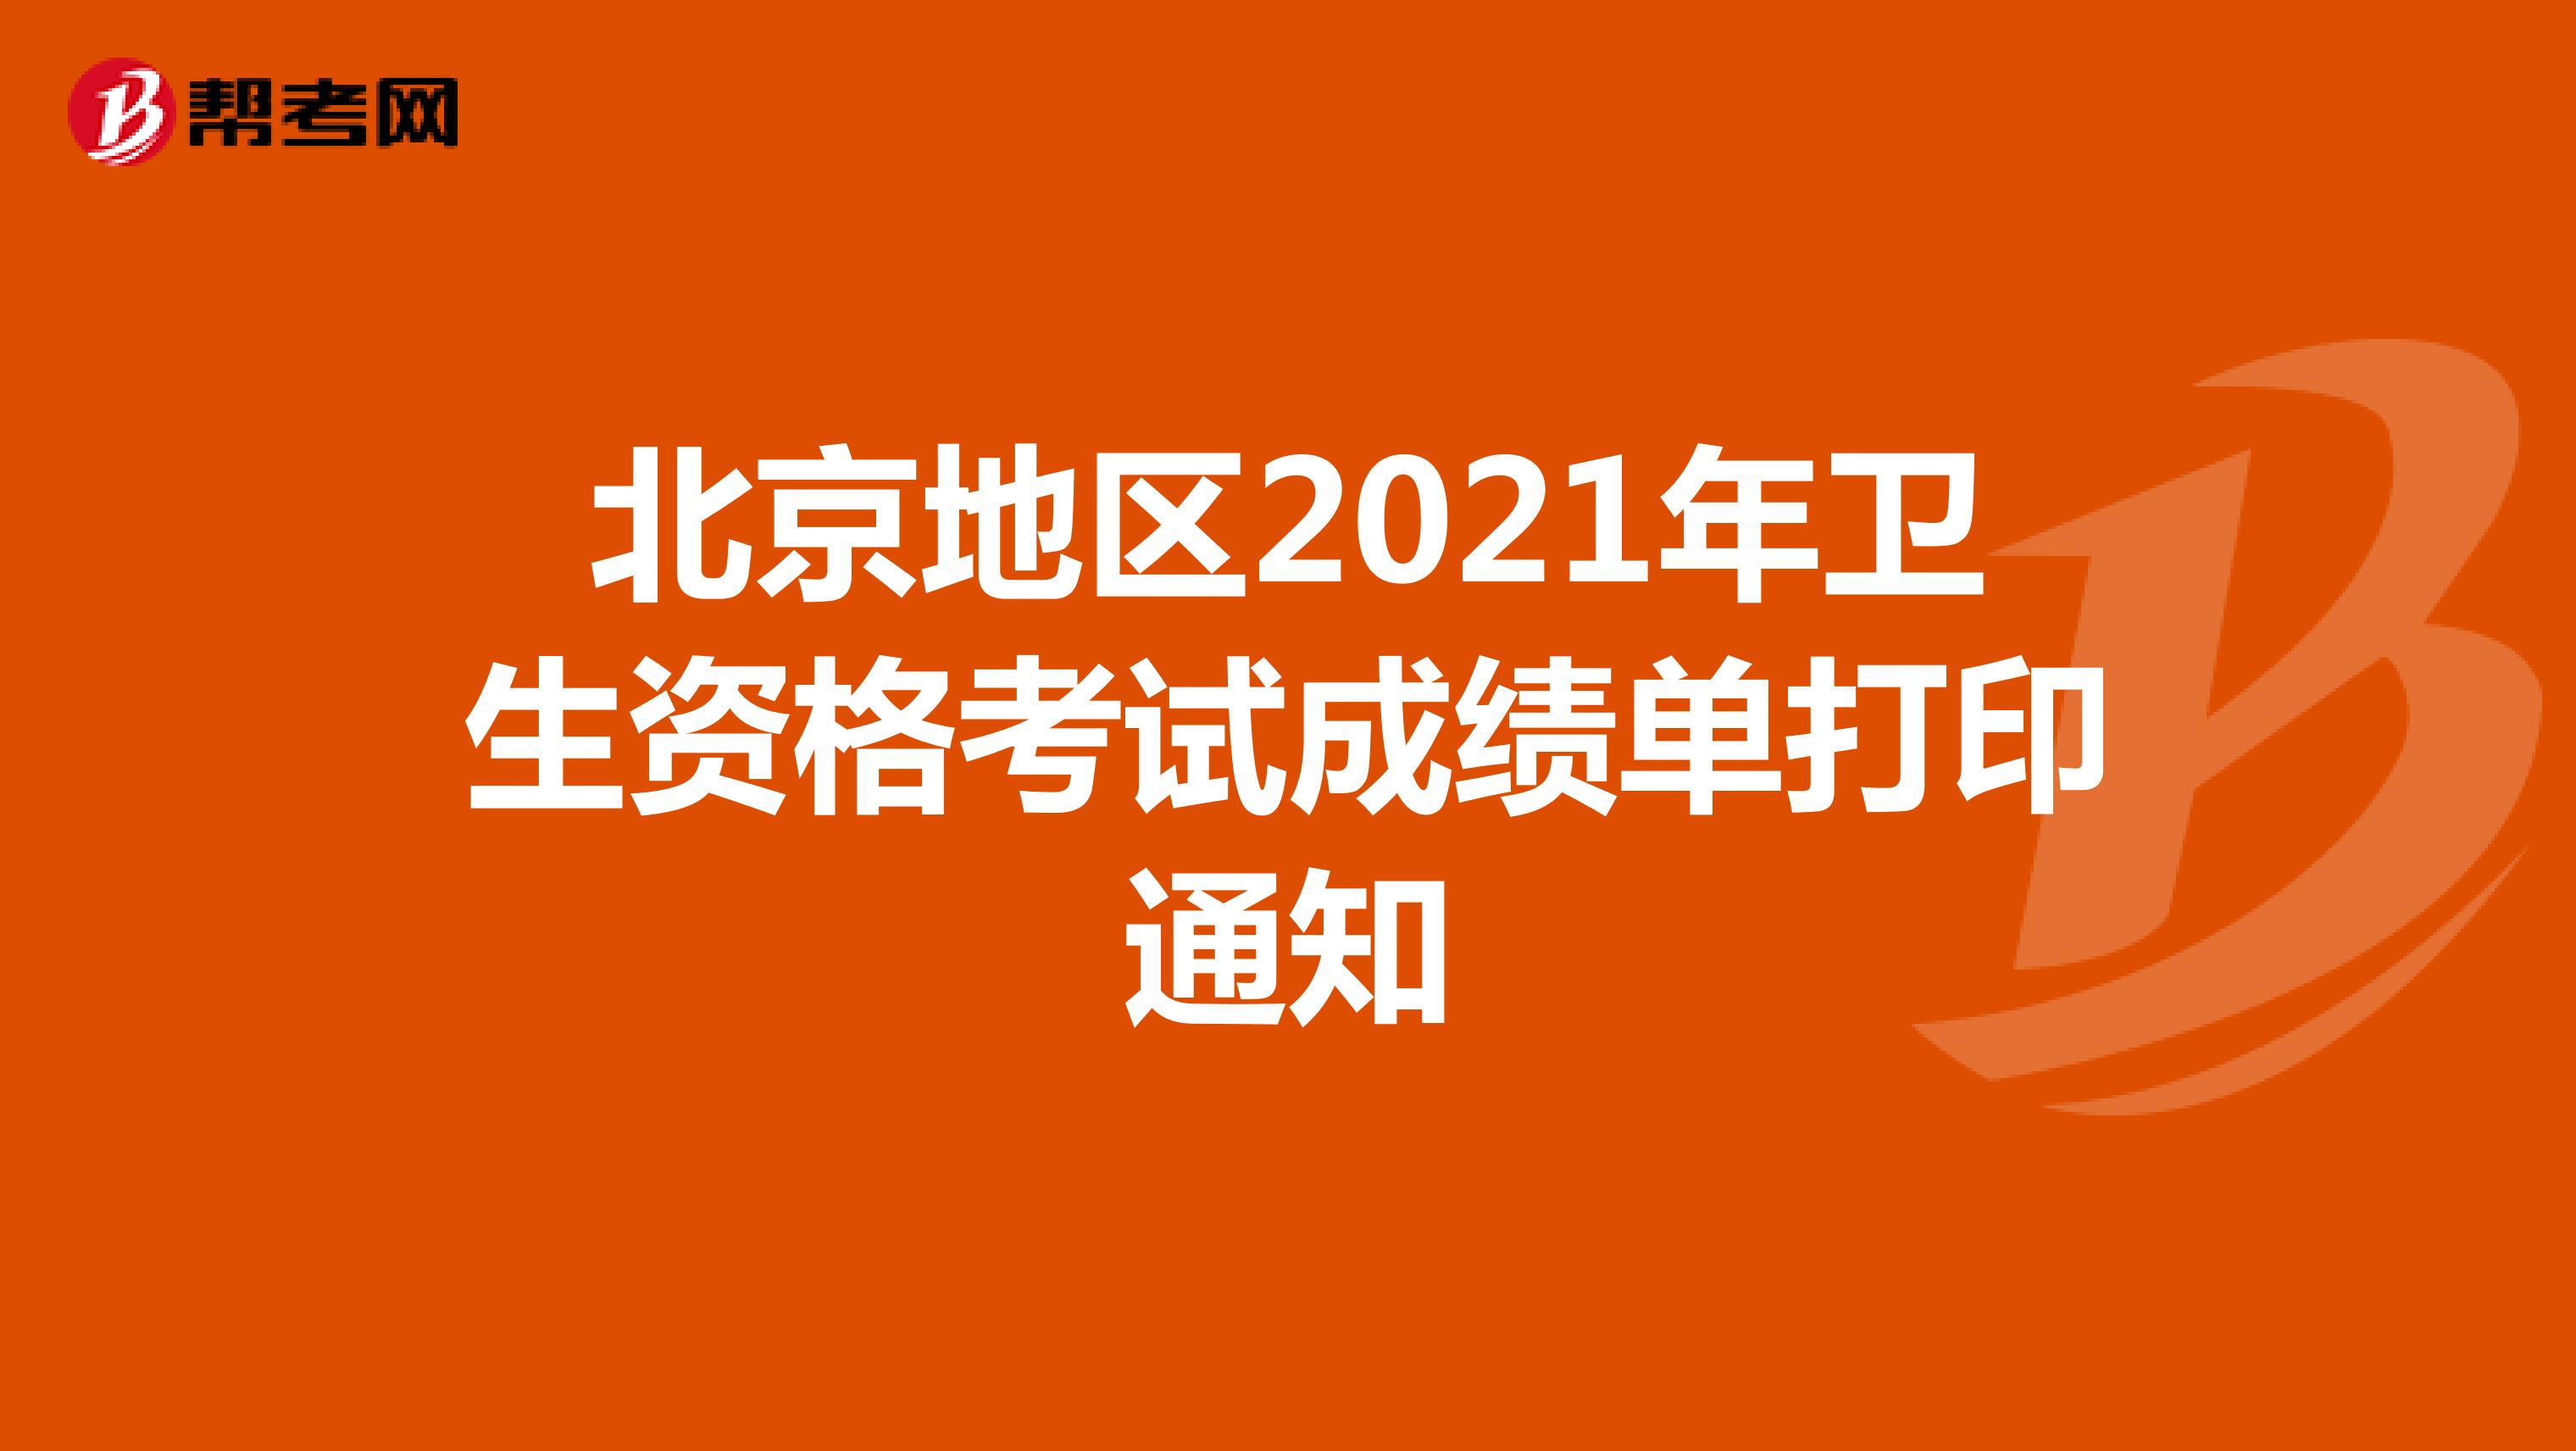 北京地区2021年卫生资格考试成绩单打印通知